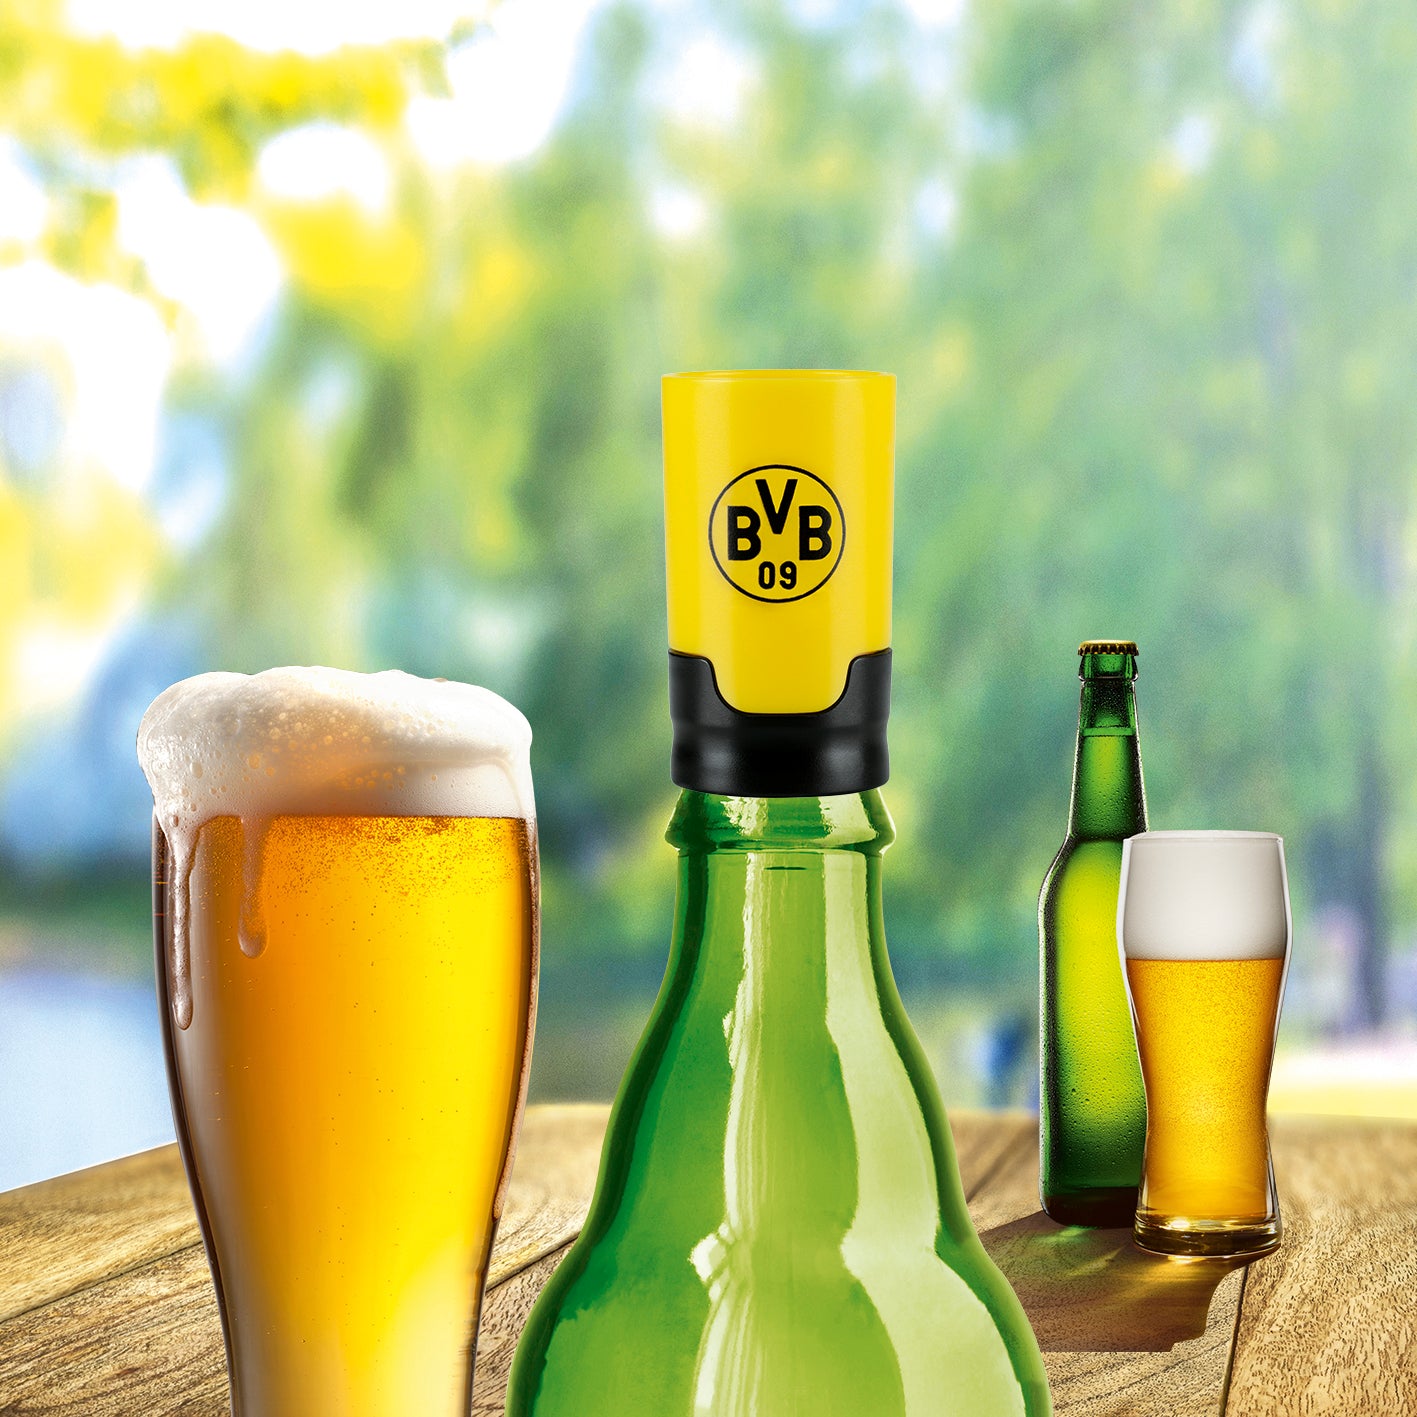 Bier-Aufbereiter im BVB-Design - 3er-Set